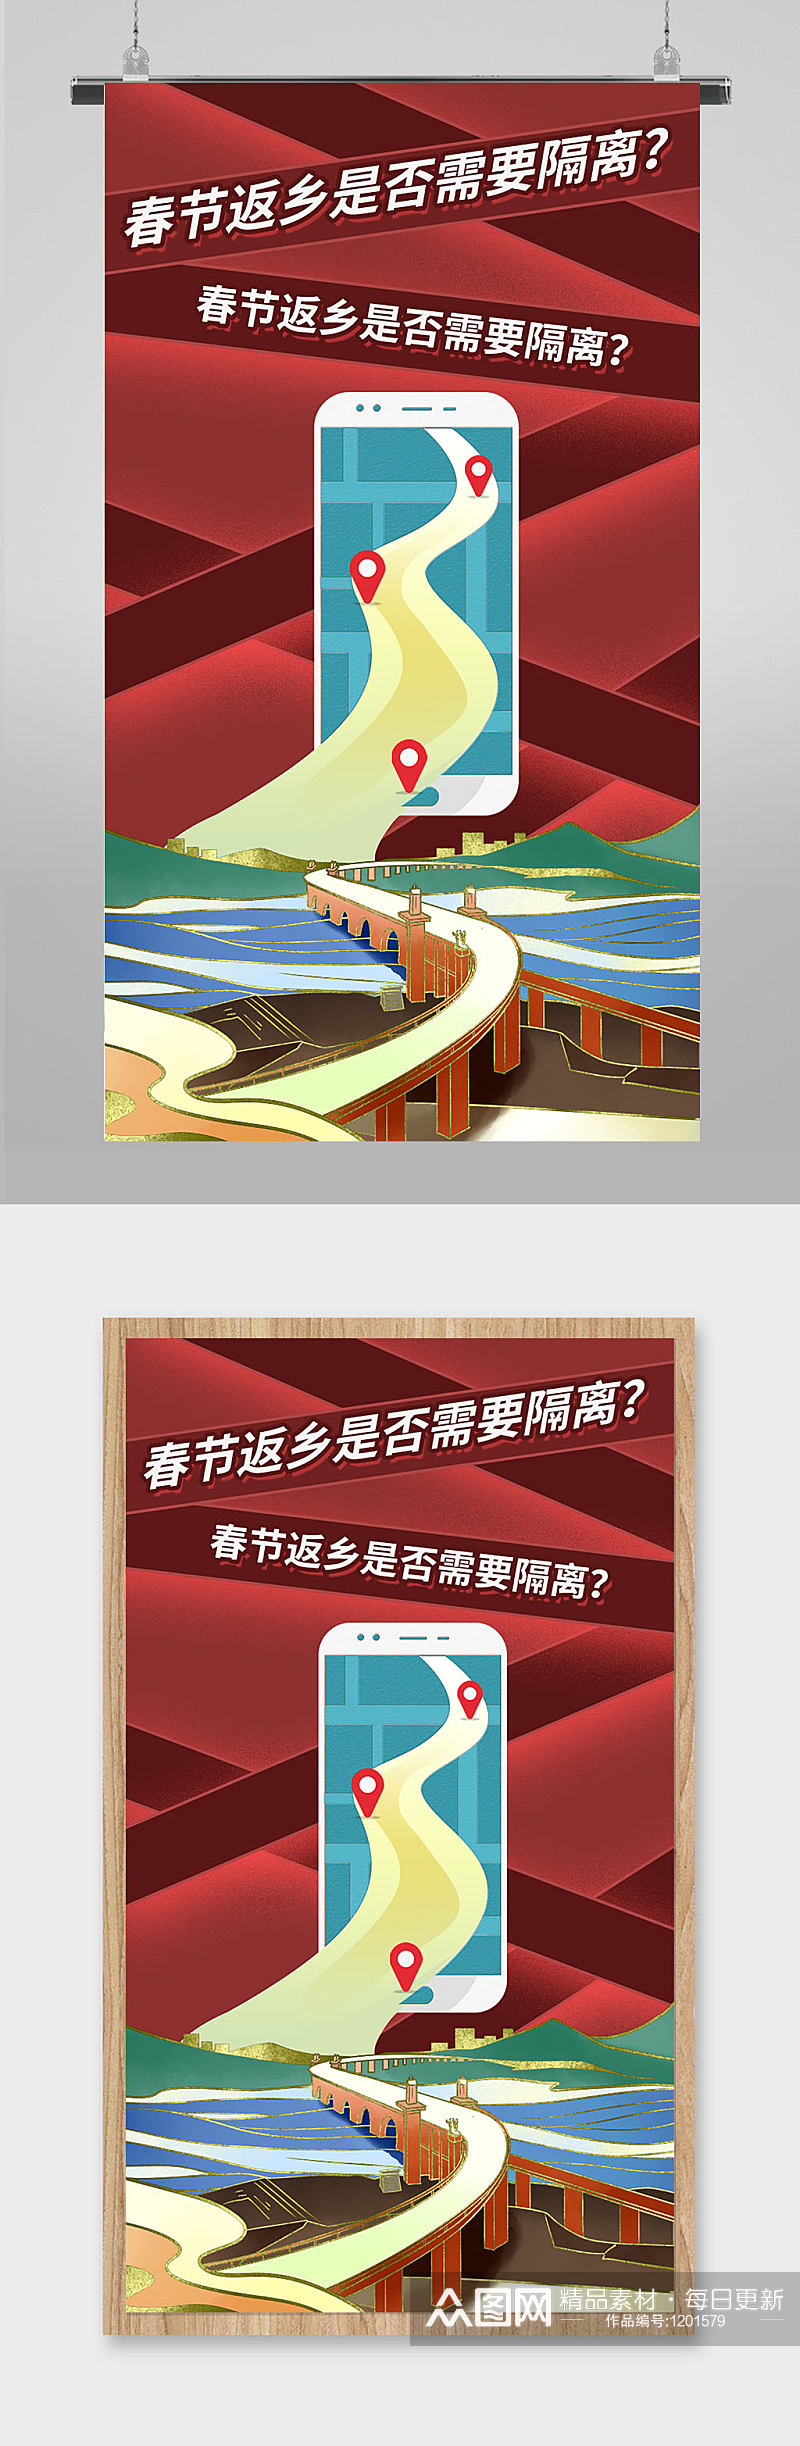 春节返乡宣传海报素材